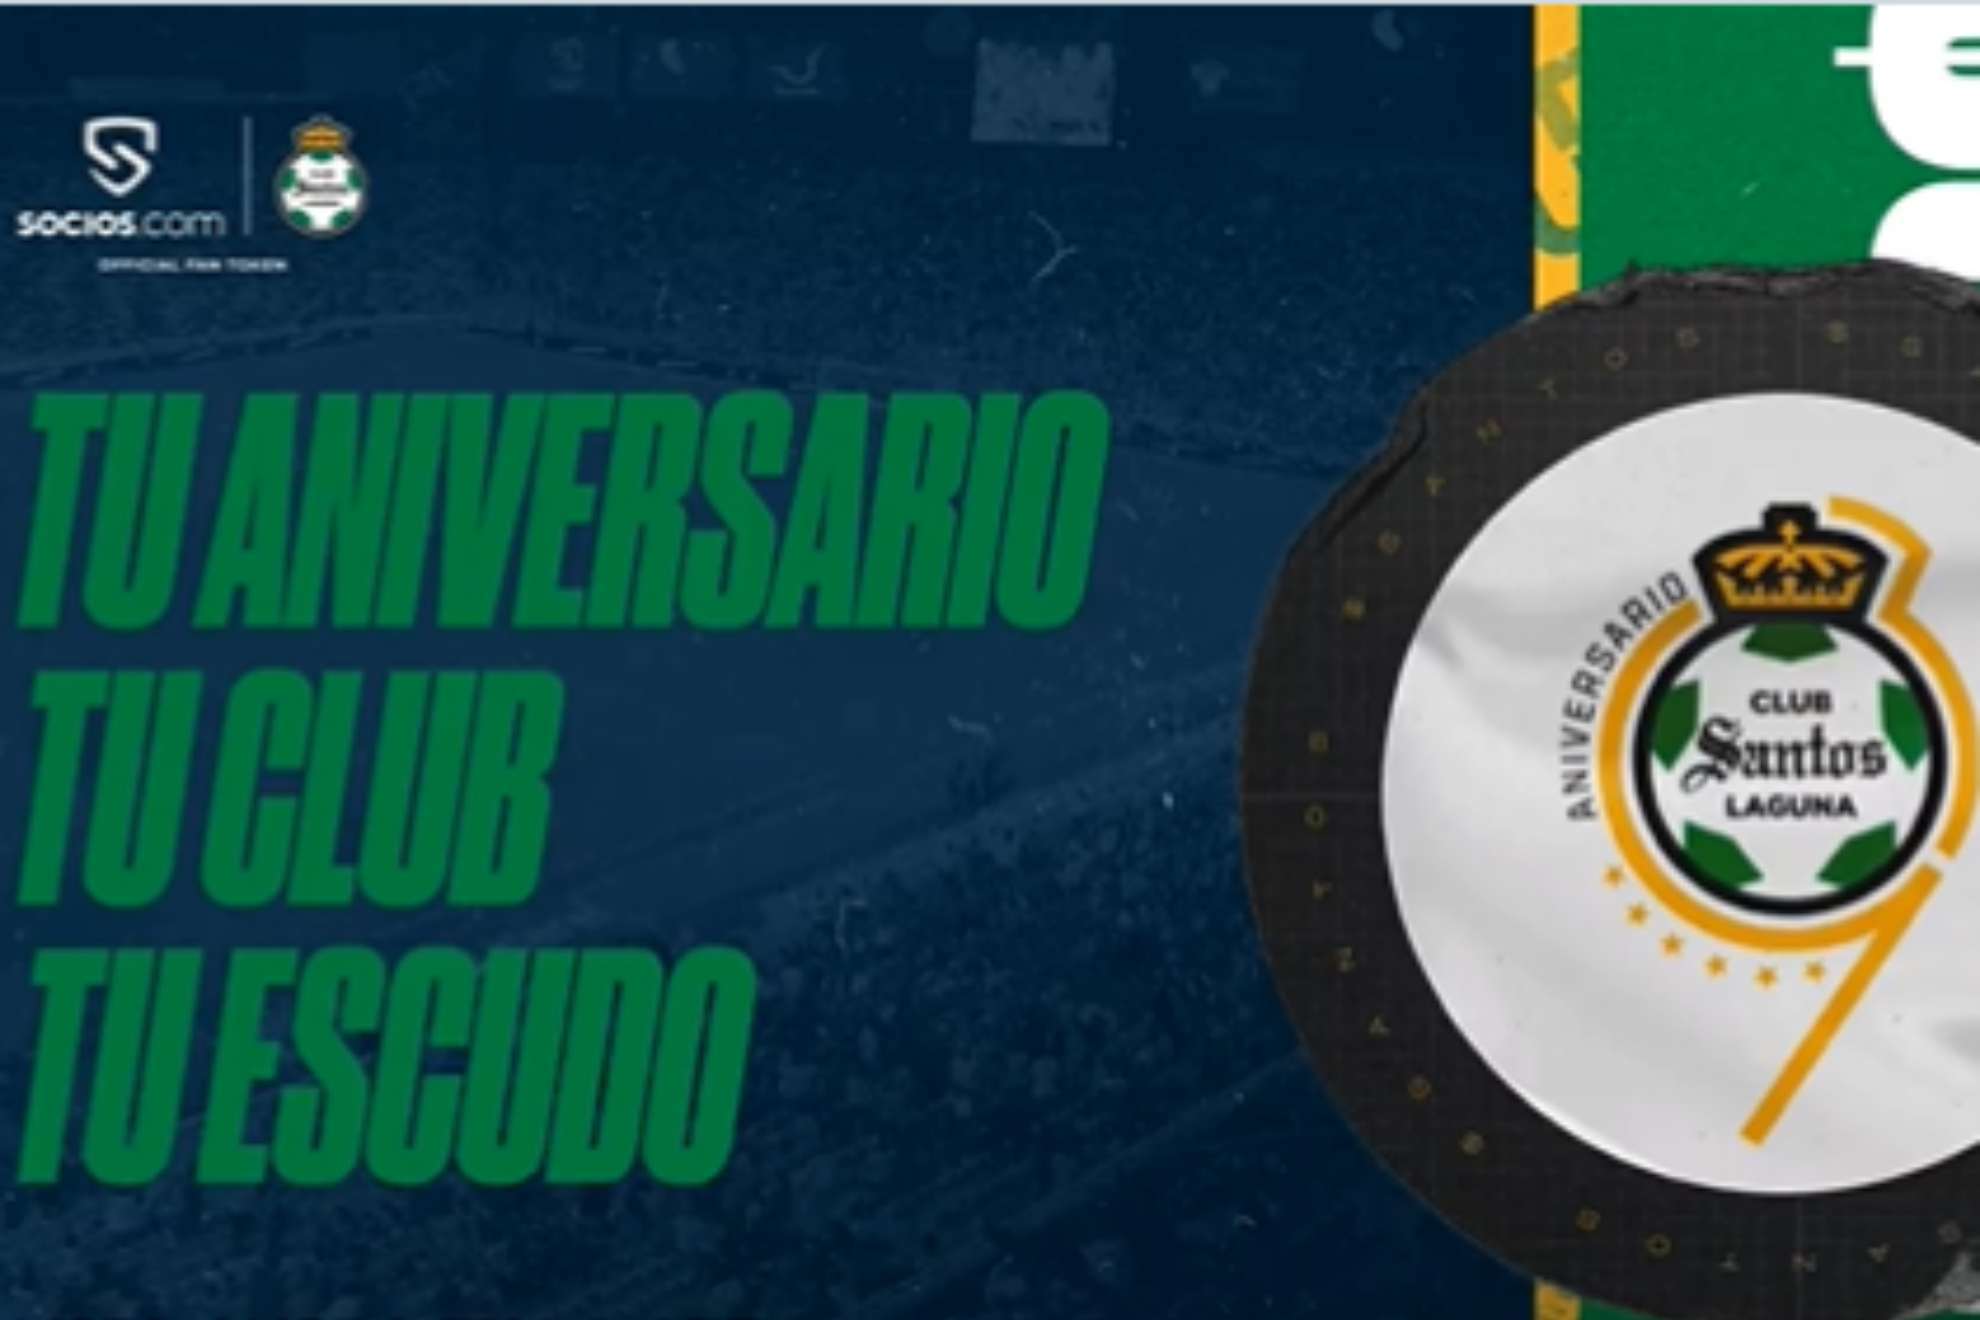 Club Santos Laguna y Socios.com te invitan a elegir el logo del 39 aniversario